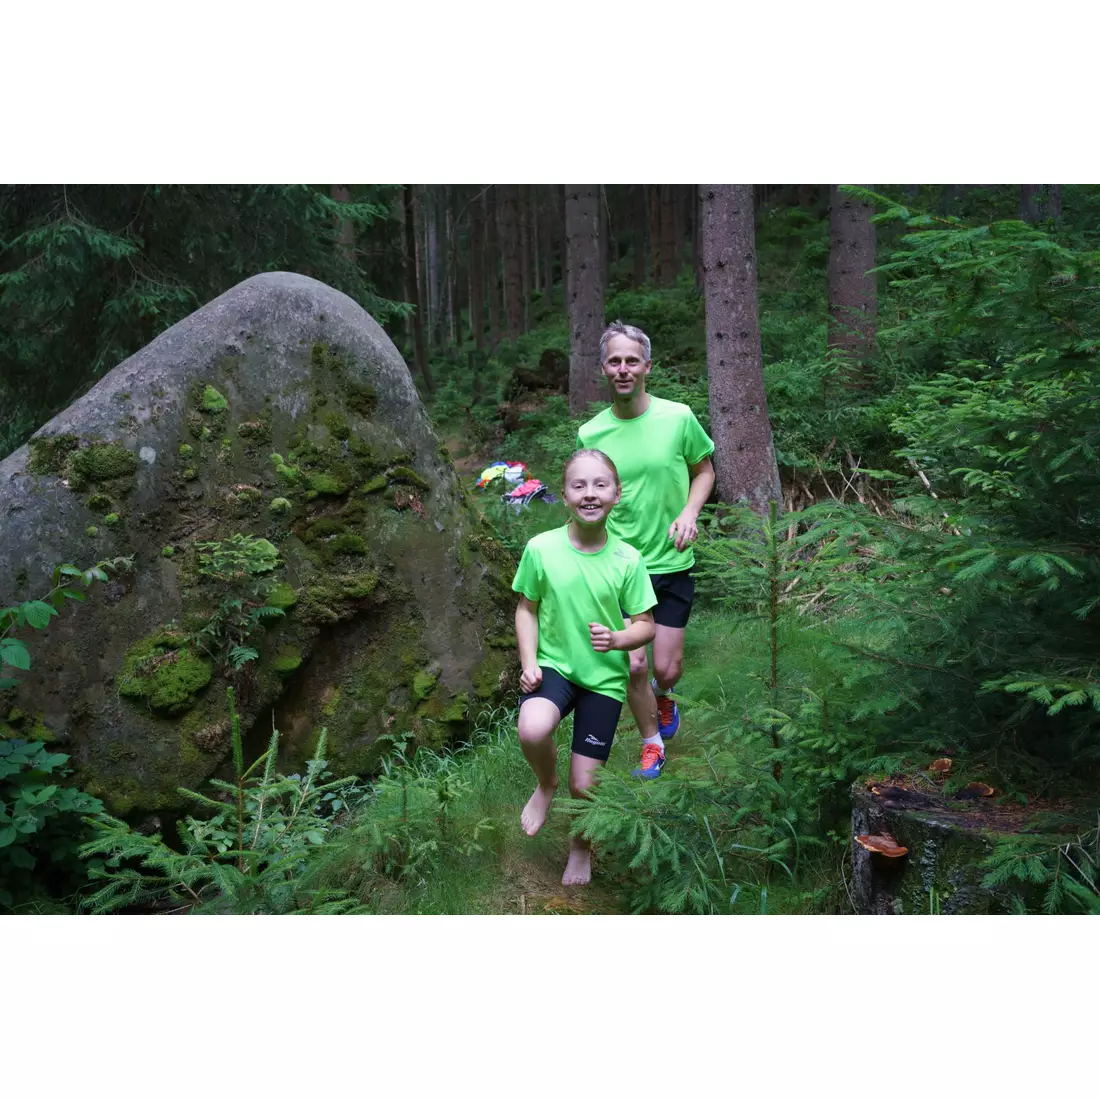 ROGELLI RUN PROMOTION męska koszulka sportowa z krótkim rękawem, fluor-zielona